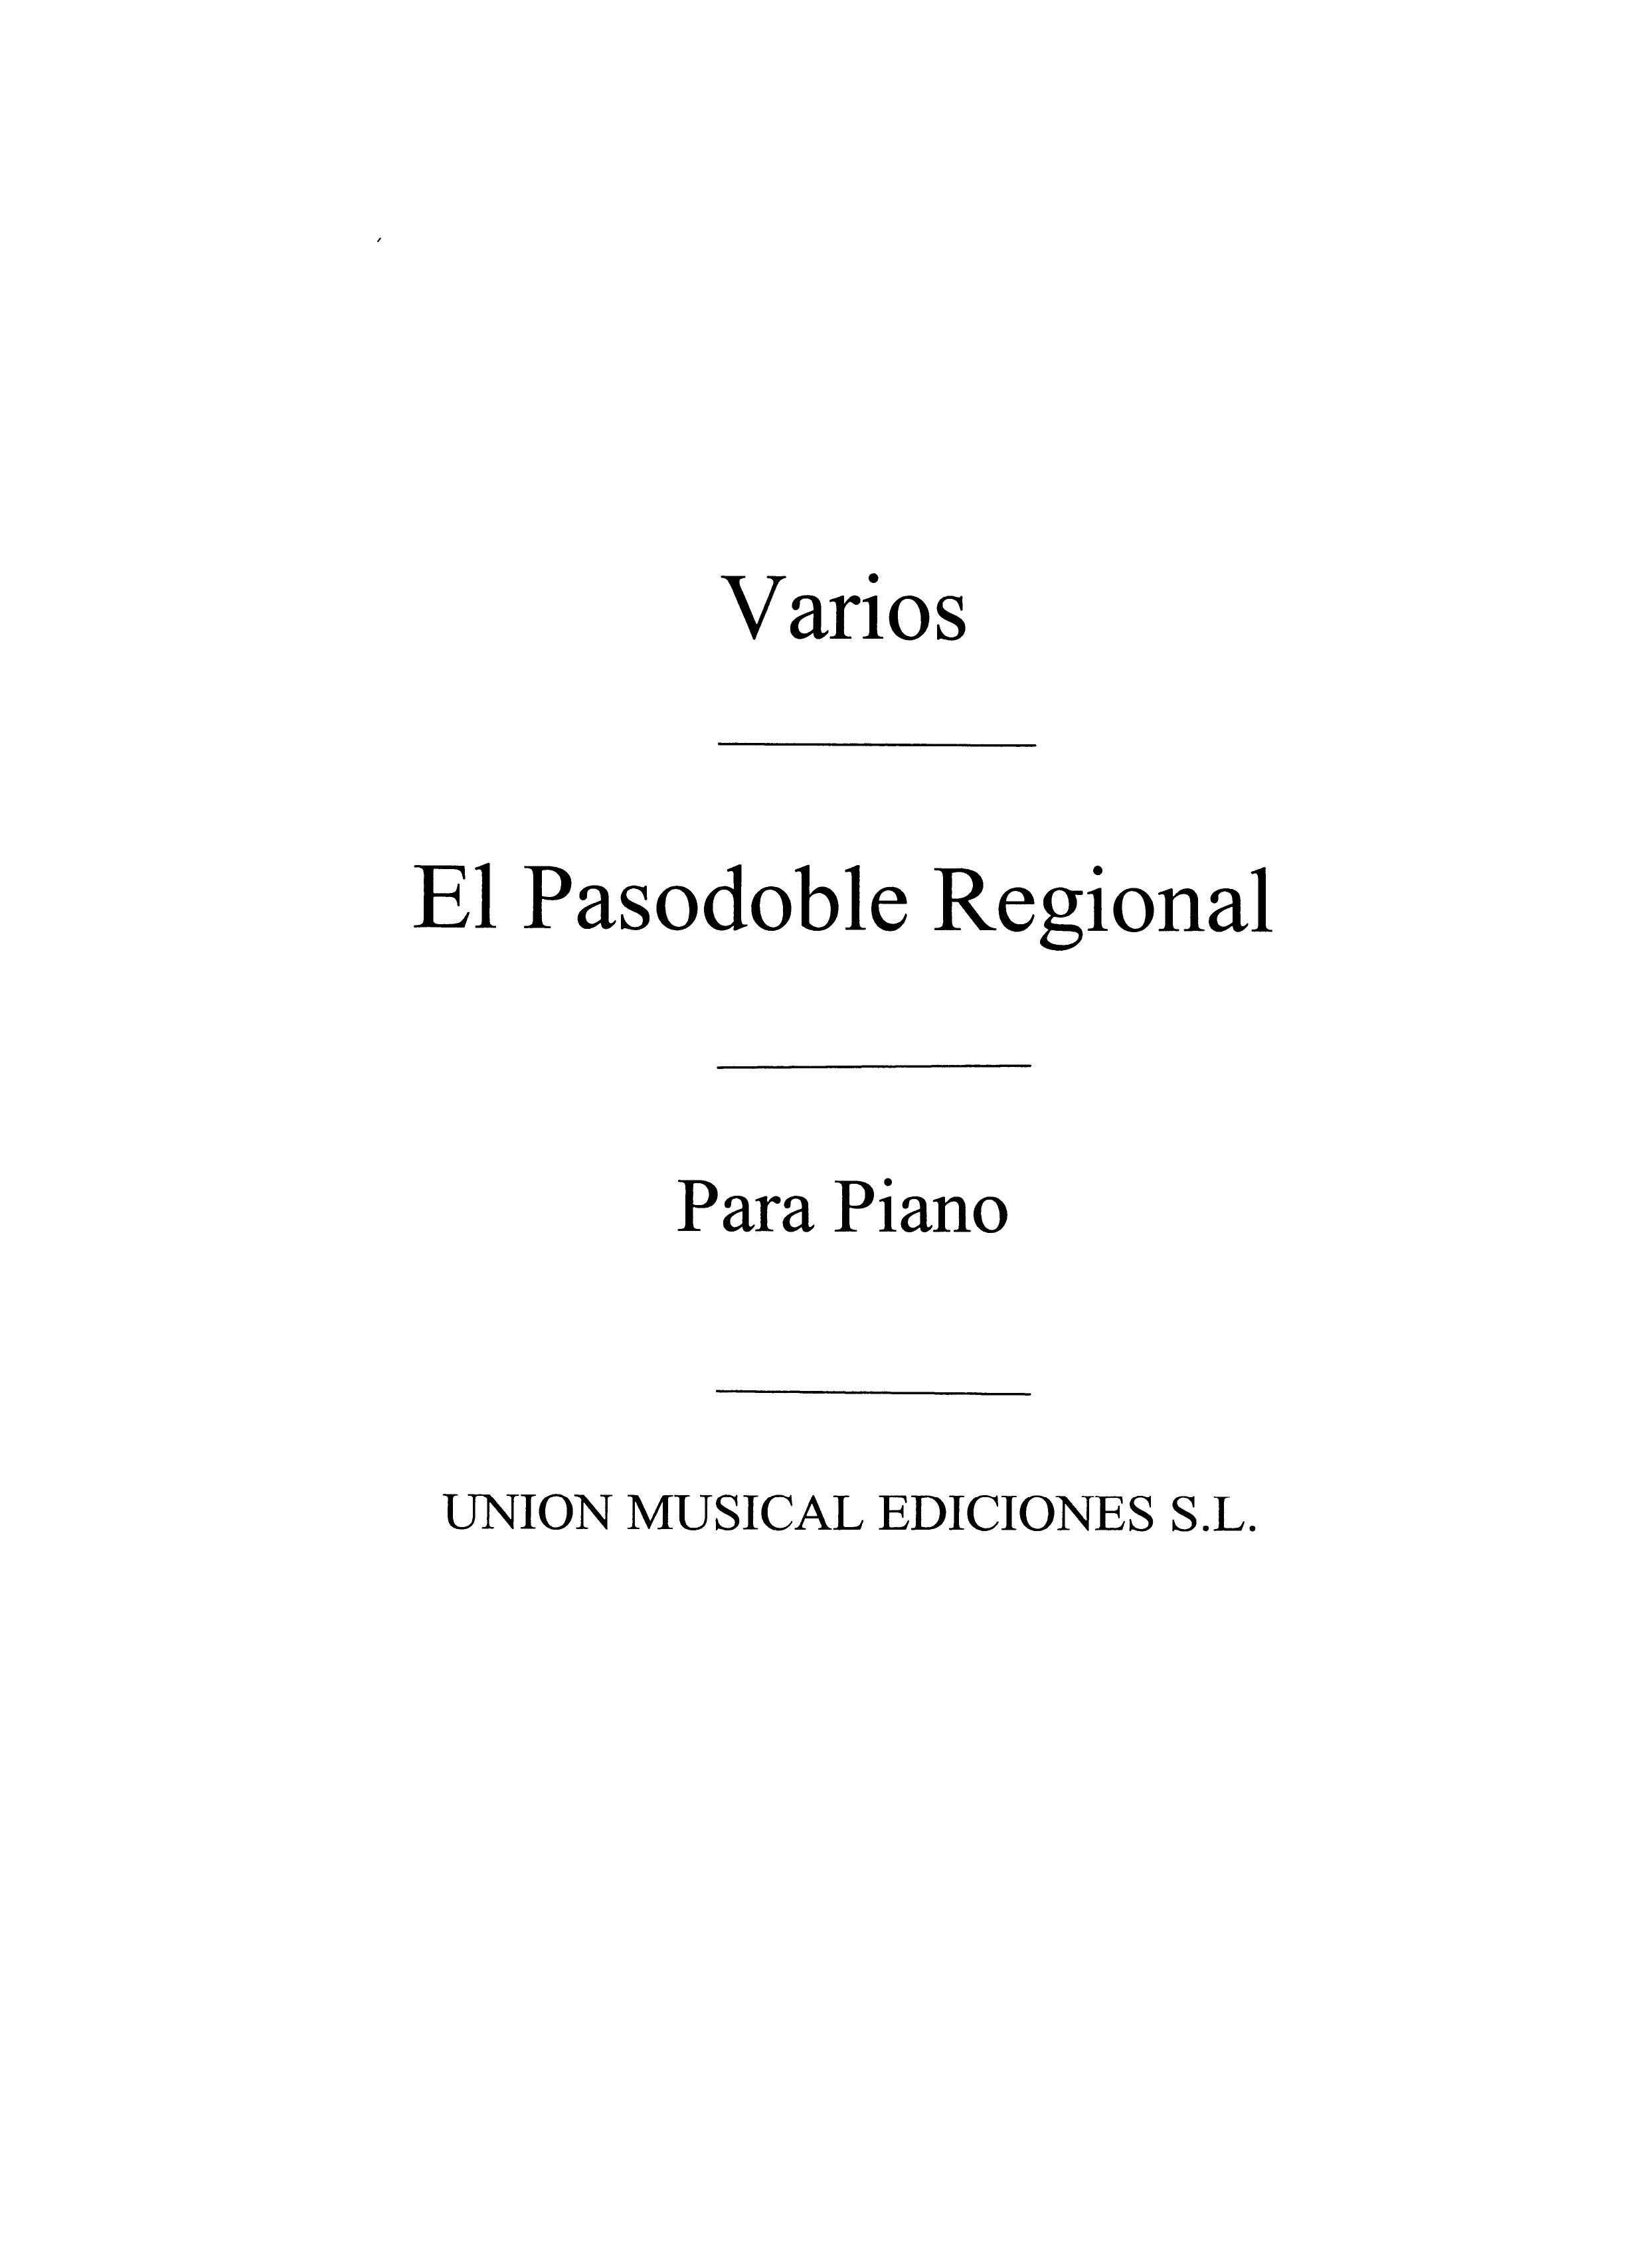 Varios: Album De Pasodoblesregionales For Piano: Piano: Instrumental Work